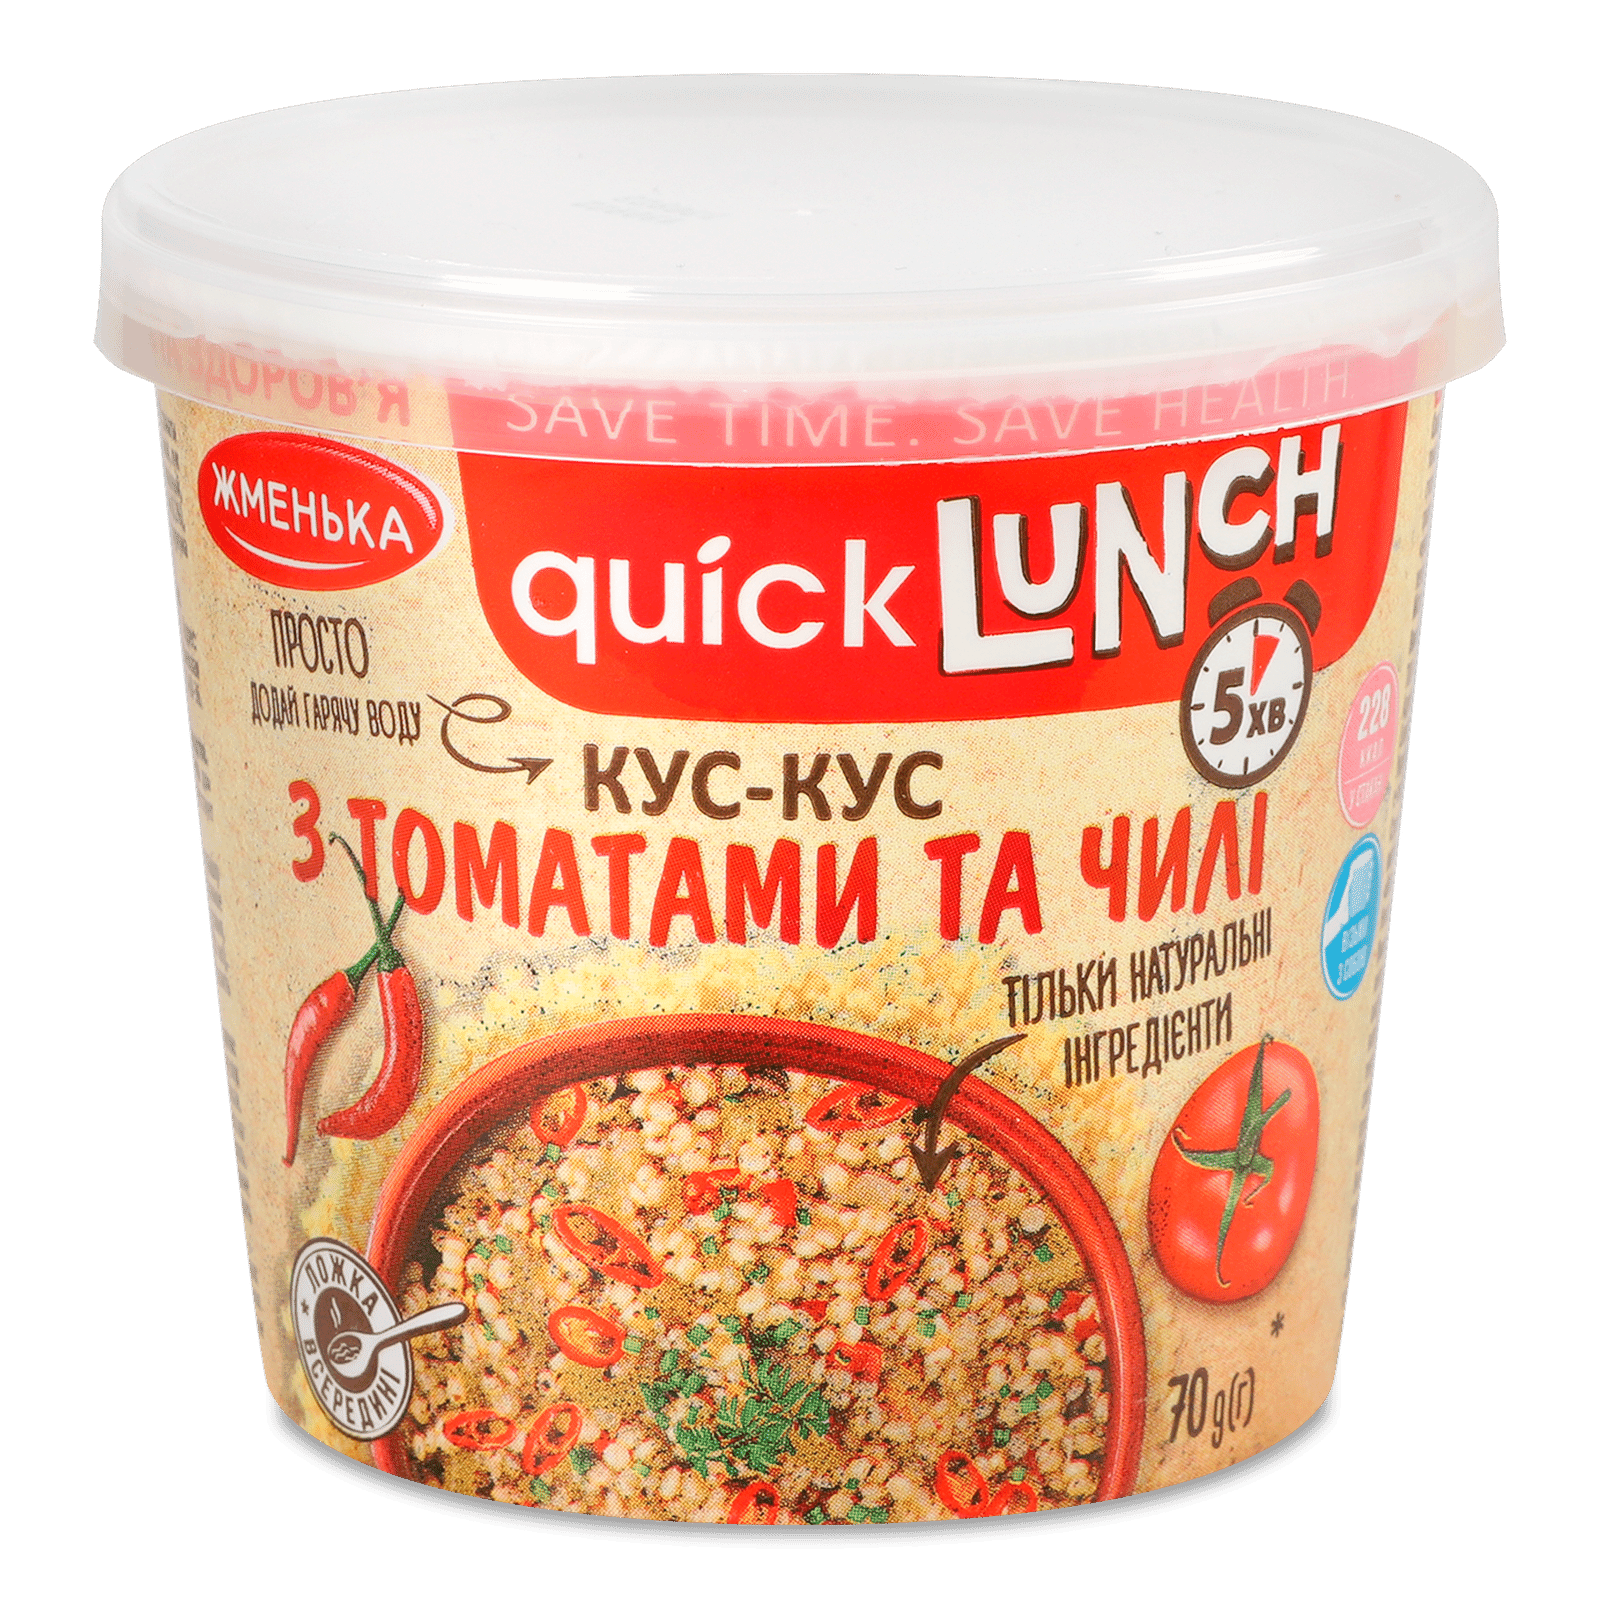 Кус-кус «Жменька» Quick Lunch з томатами та чилі - 1